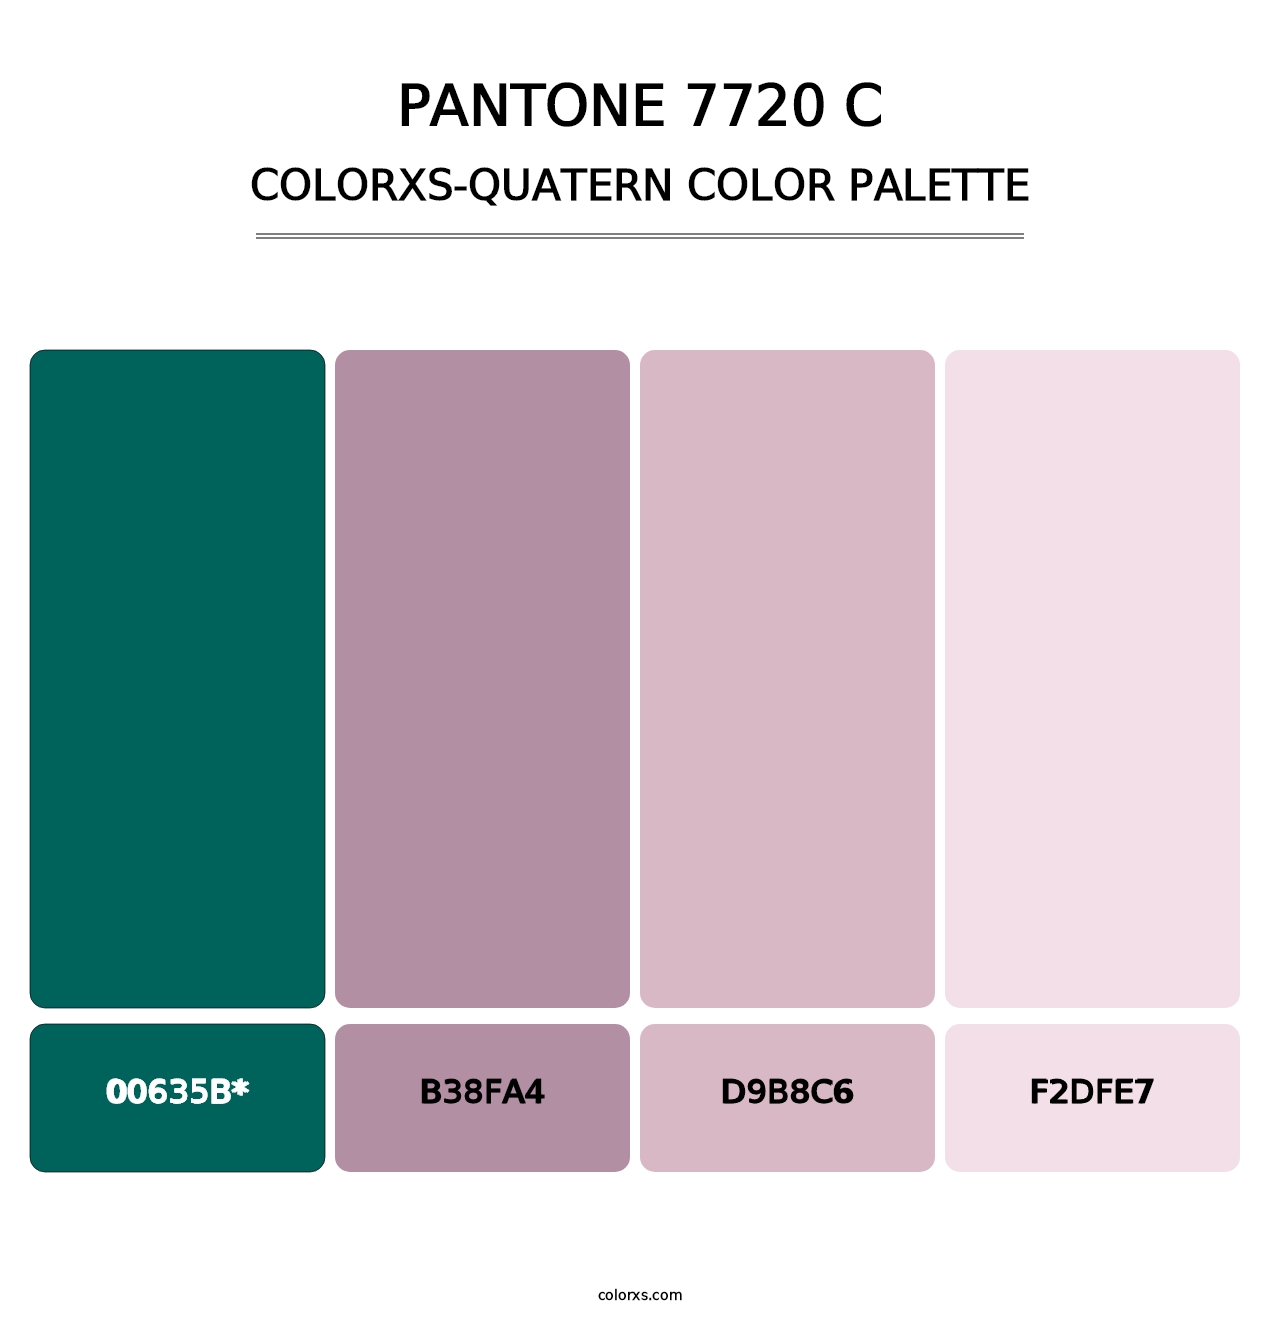 PANTONE 7720 C - Colorxs Quatern Palette